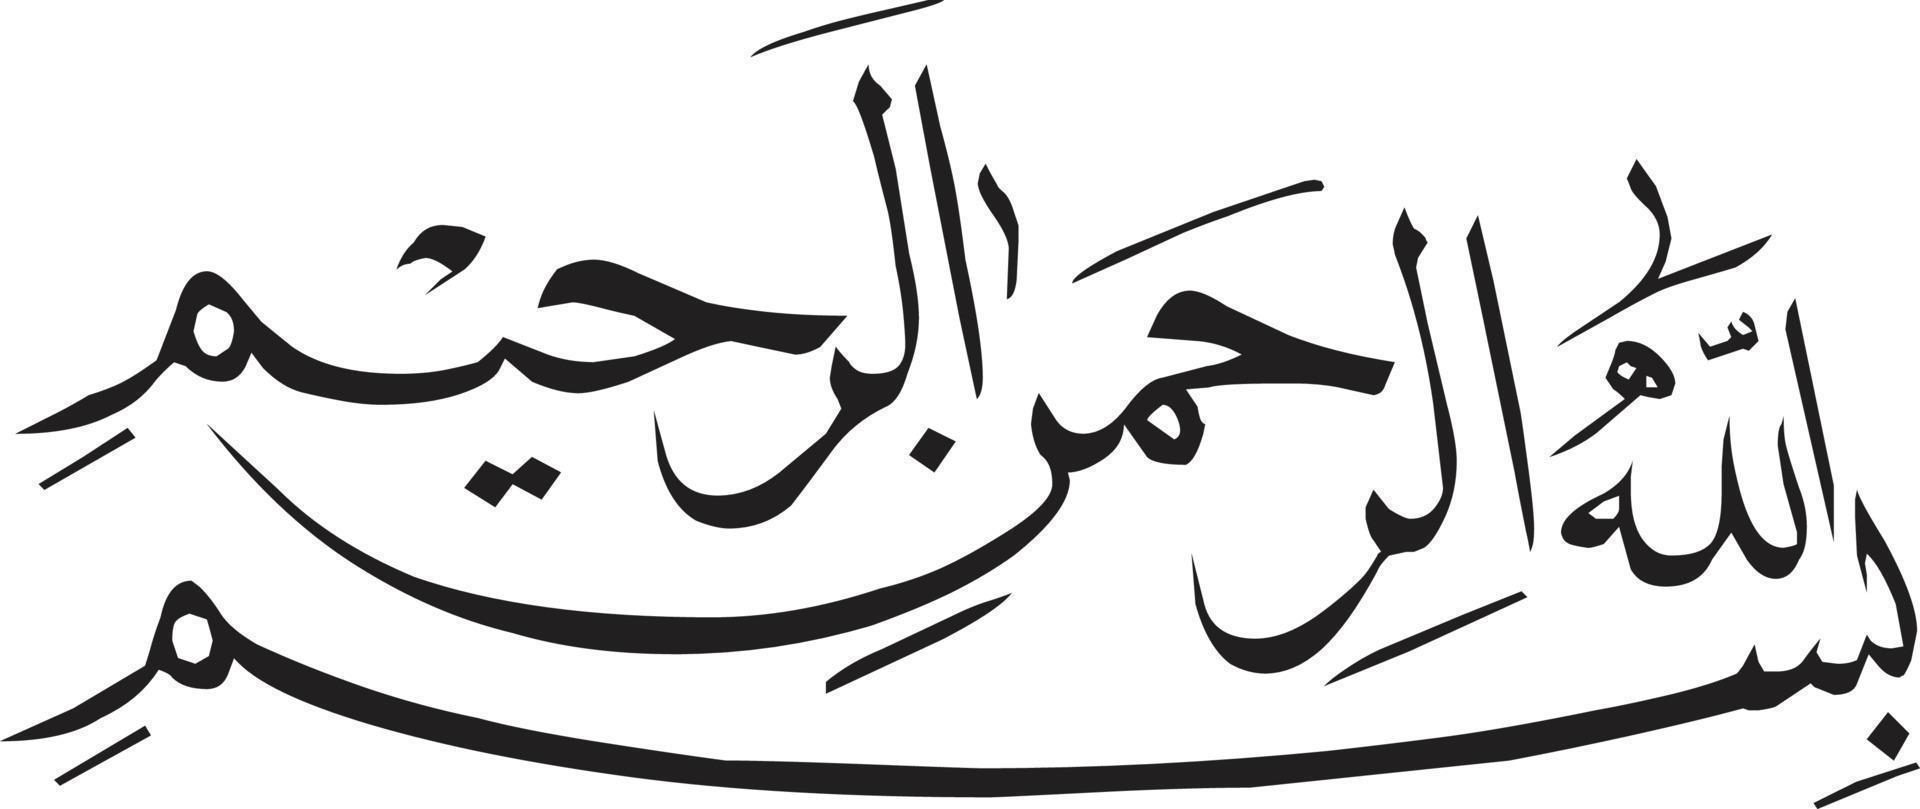 bismila título islámico urdu caligrafía vector libre